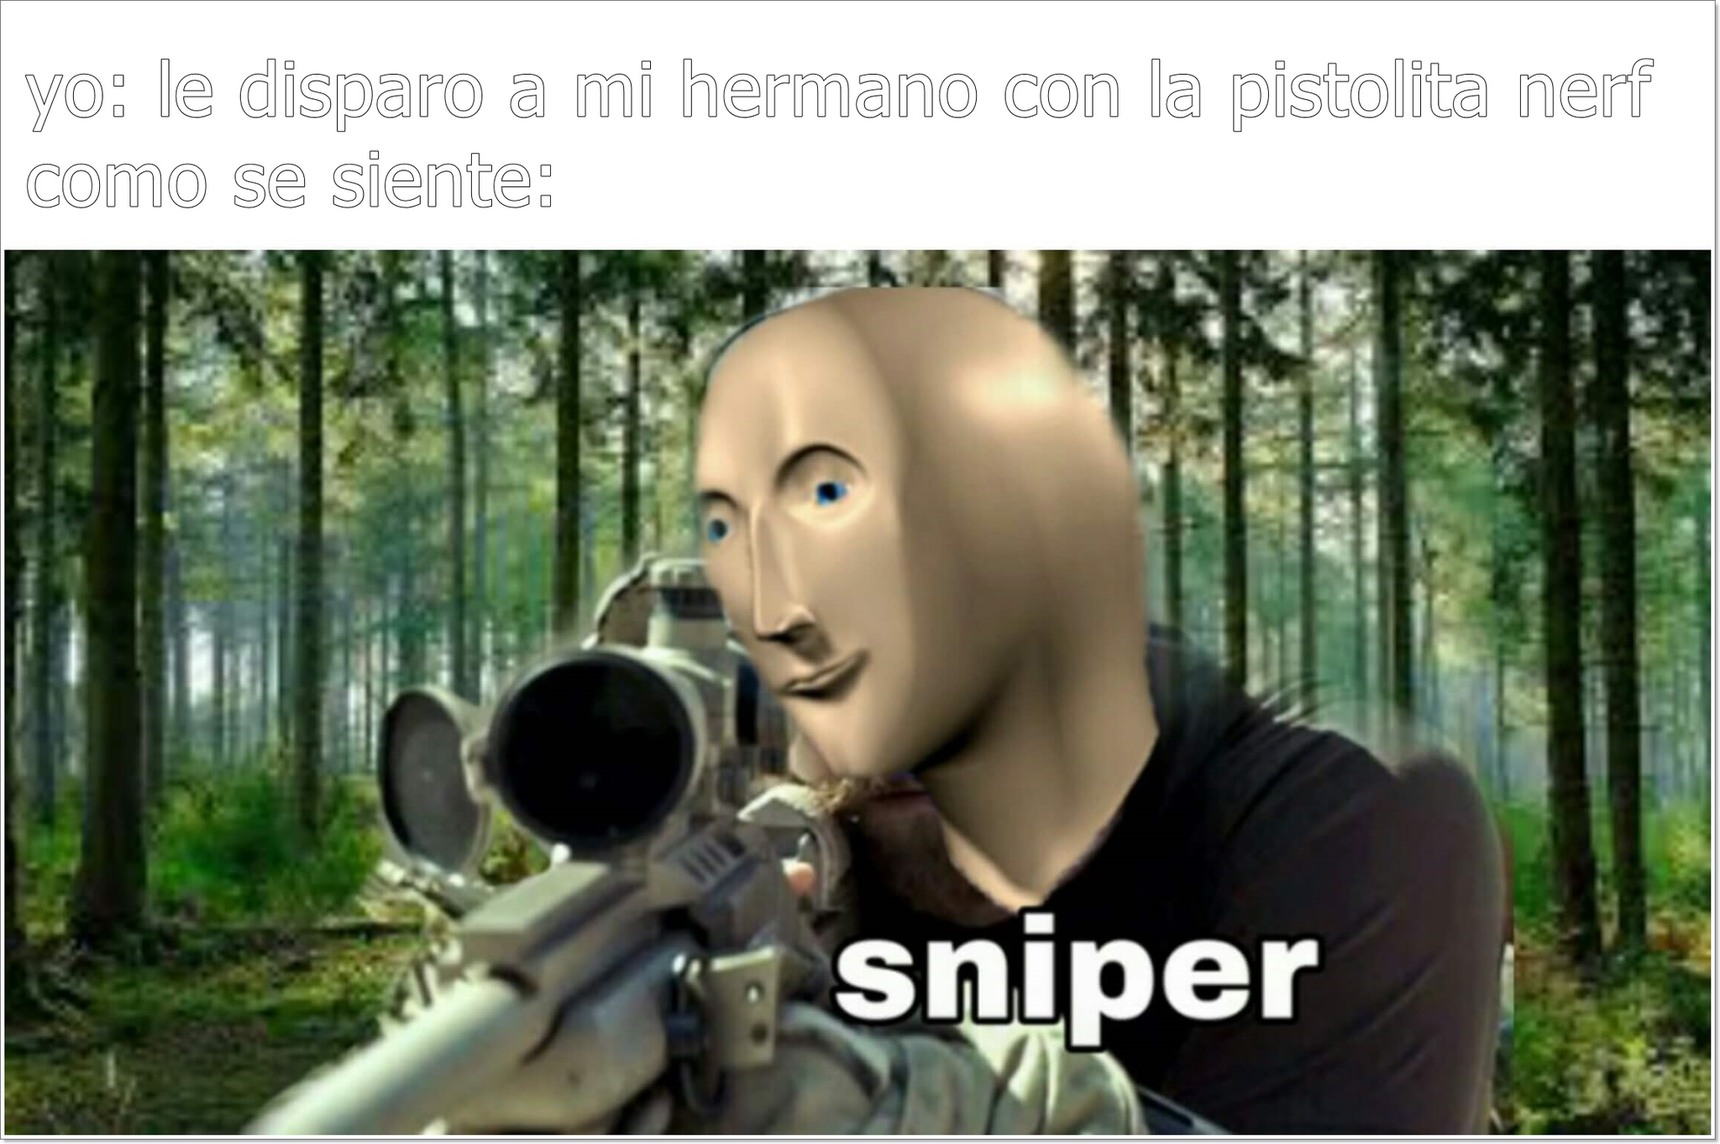 El sniper - meme